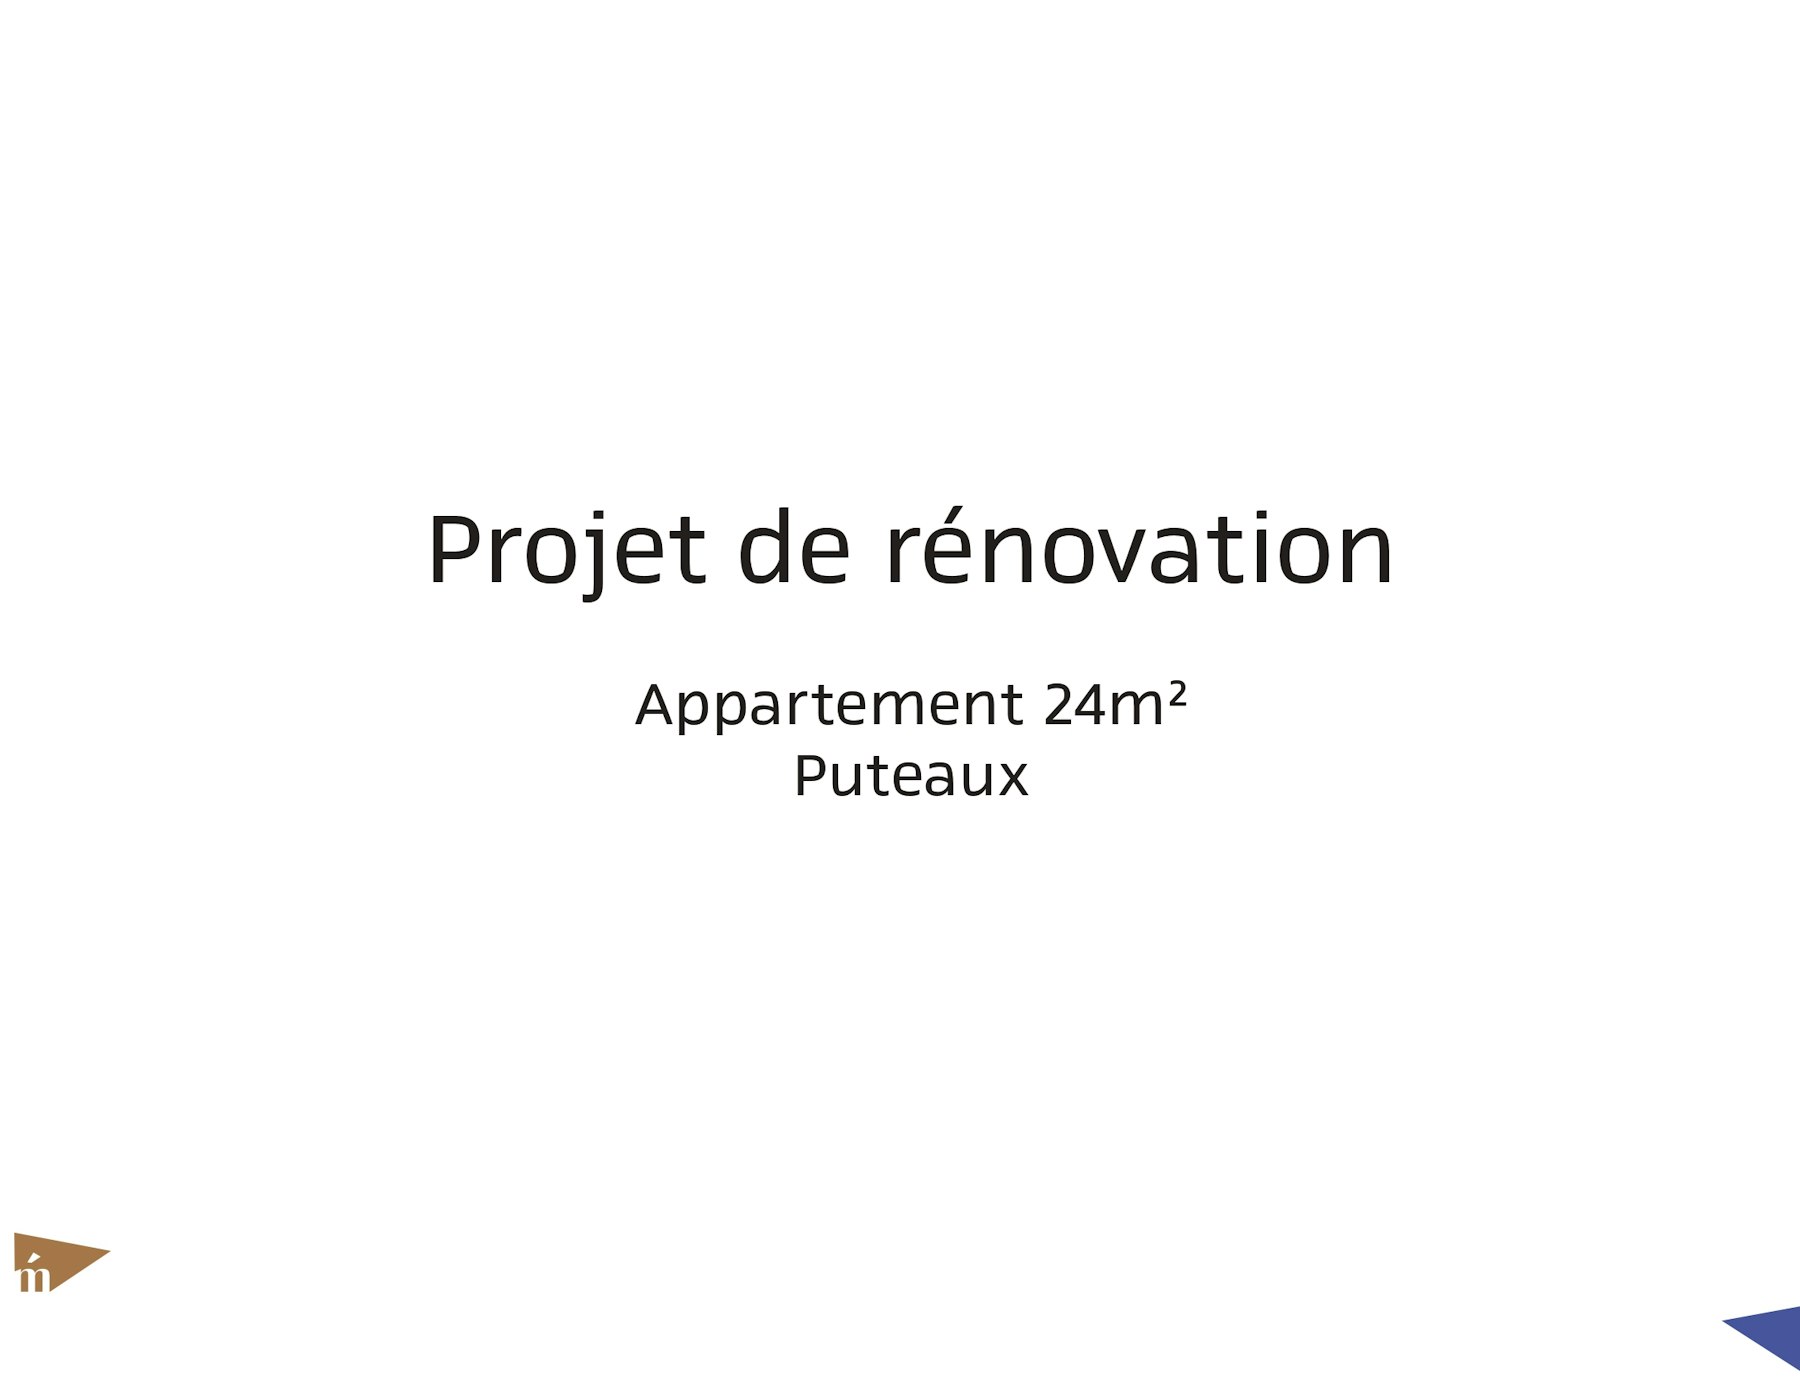 photo Projet rue Voltaire - 24 m² - Puteaux Léa Mast - Architecte hemea